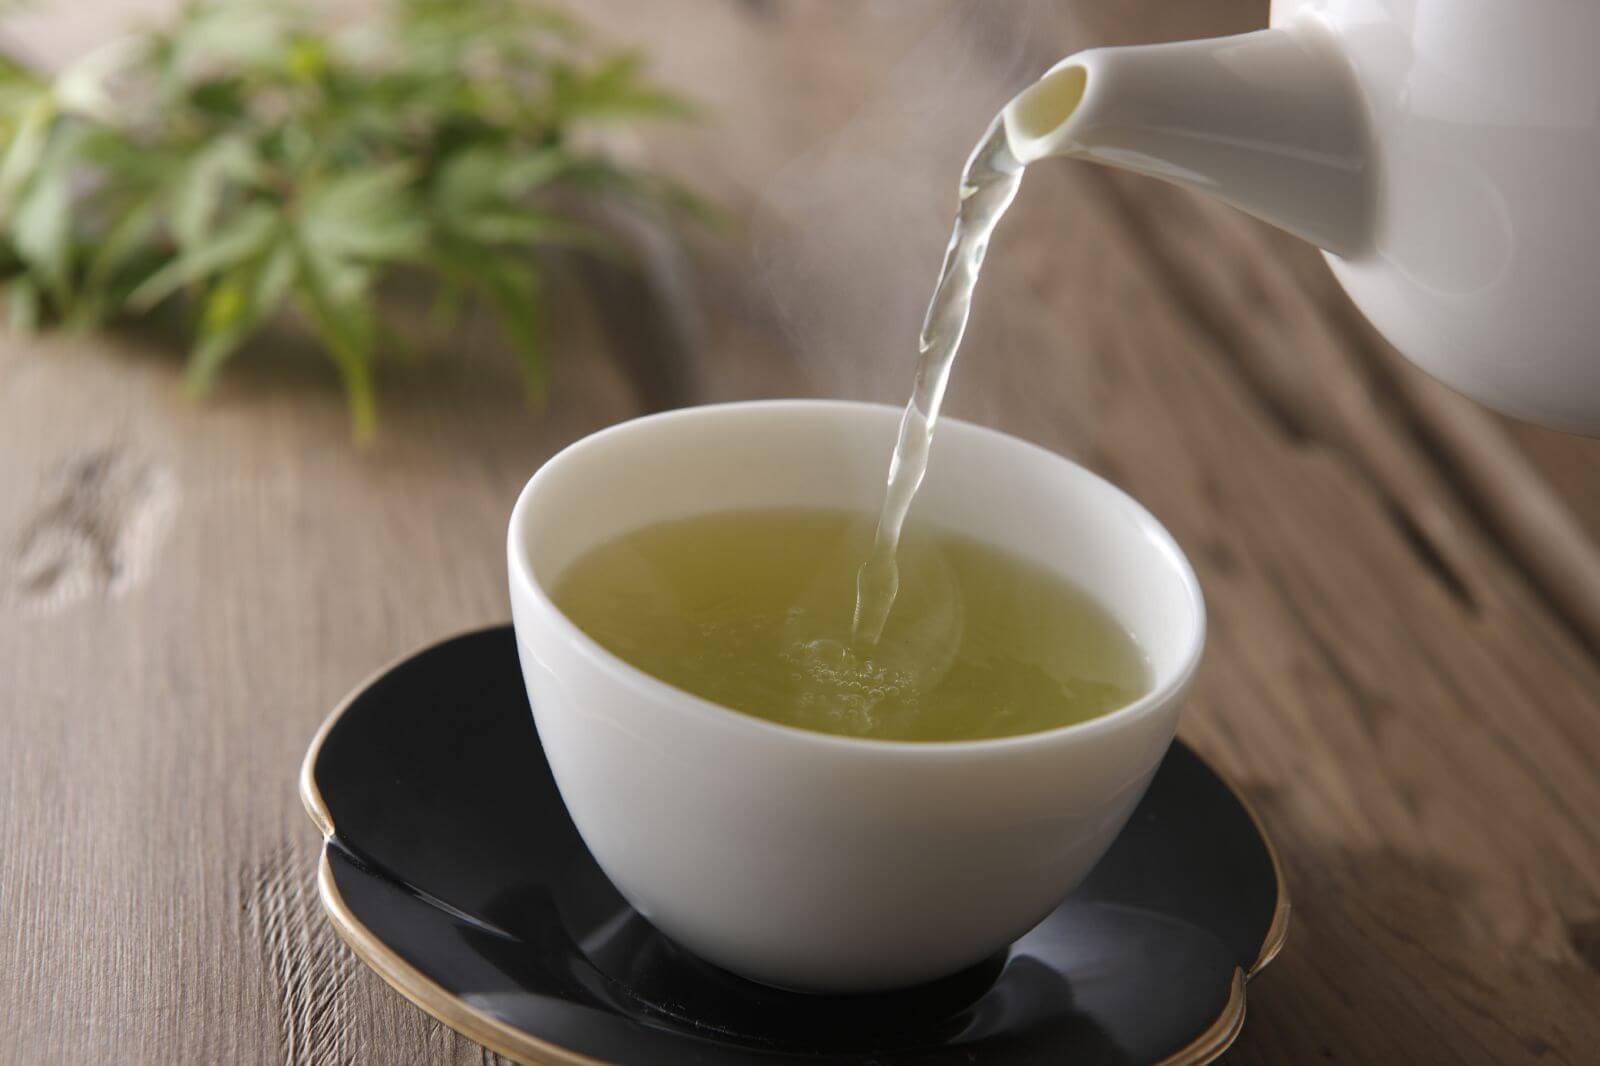 नियमित रूप से चाय की खपत के साथ जुड़ा हुआ है वृद्धि हुई जीवन प्रत्याशा